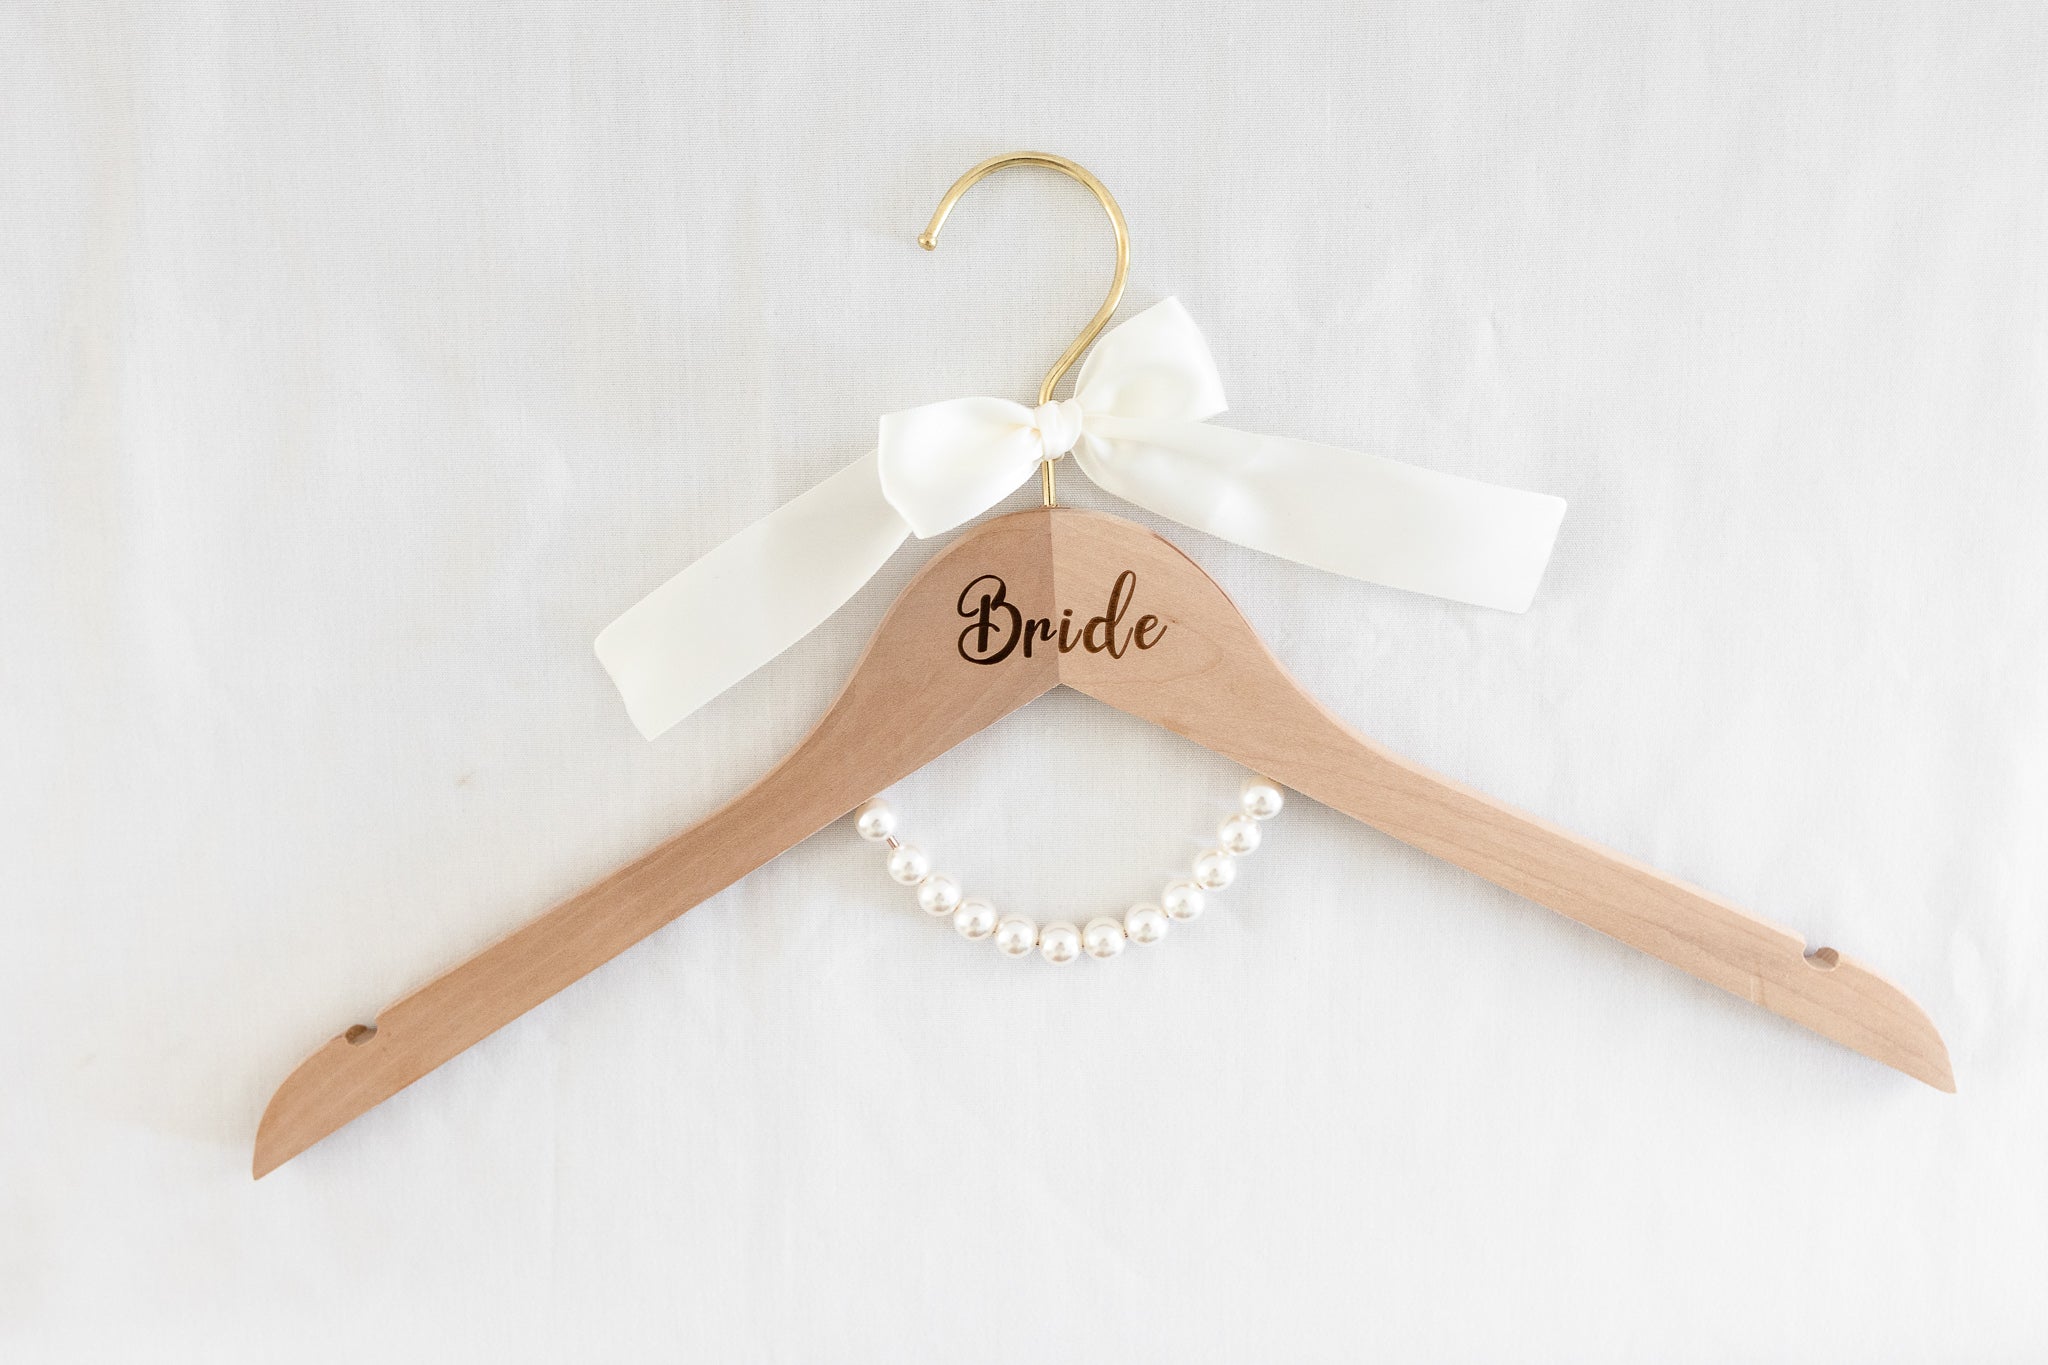 Bride Hanger